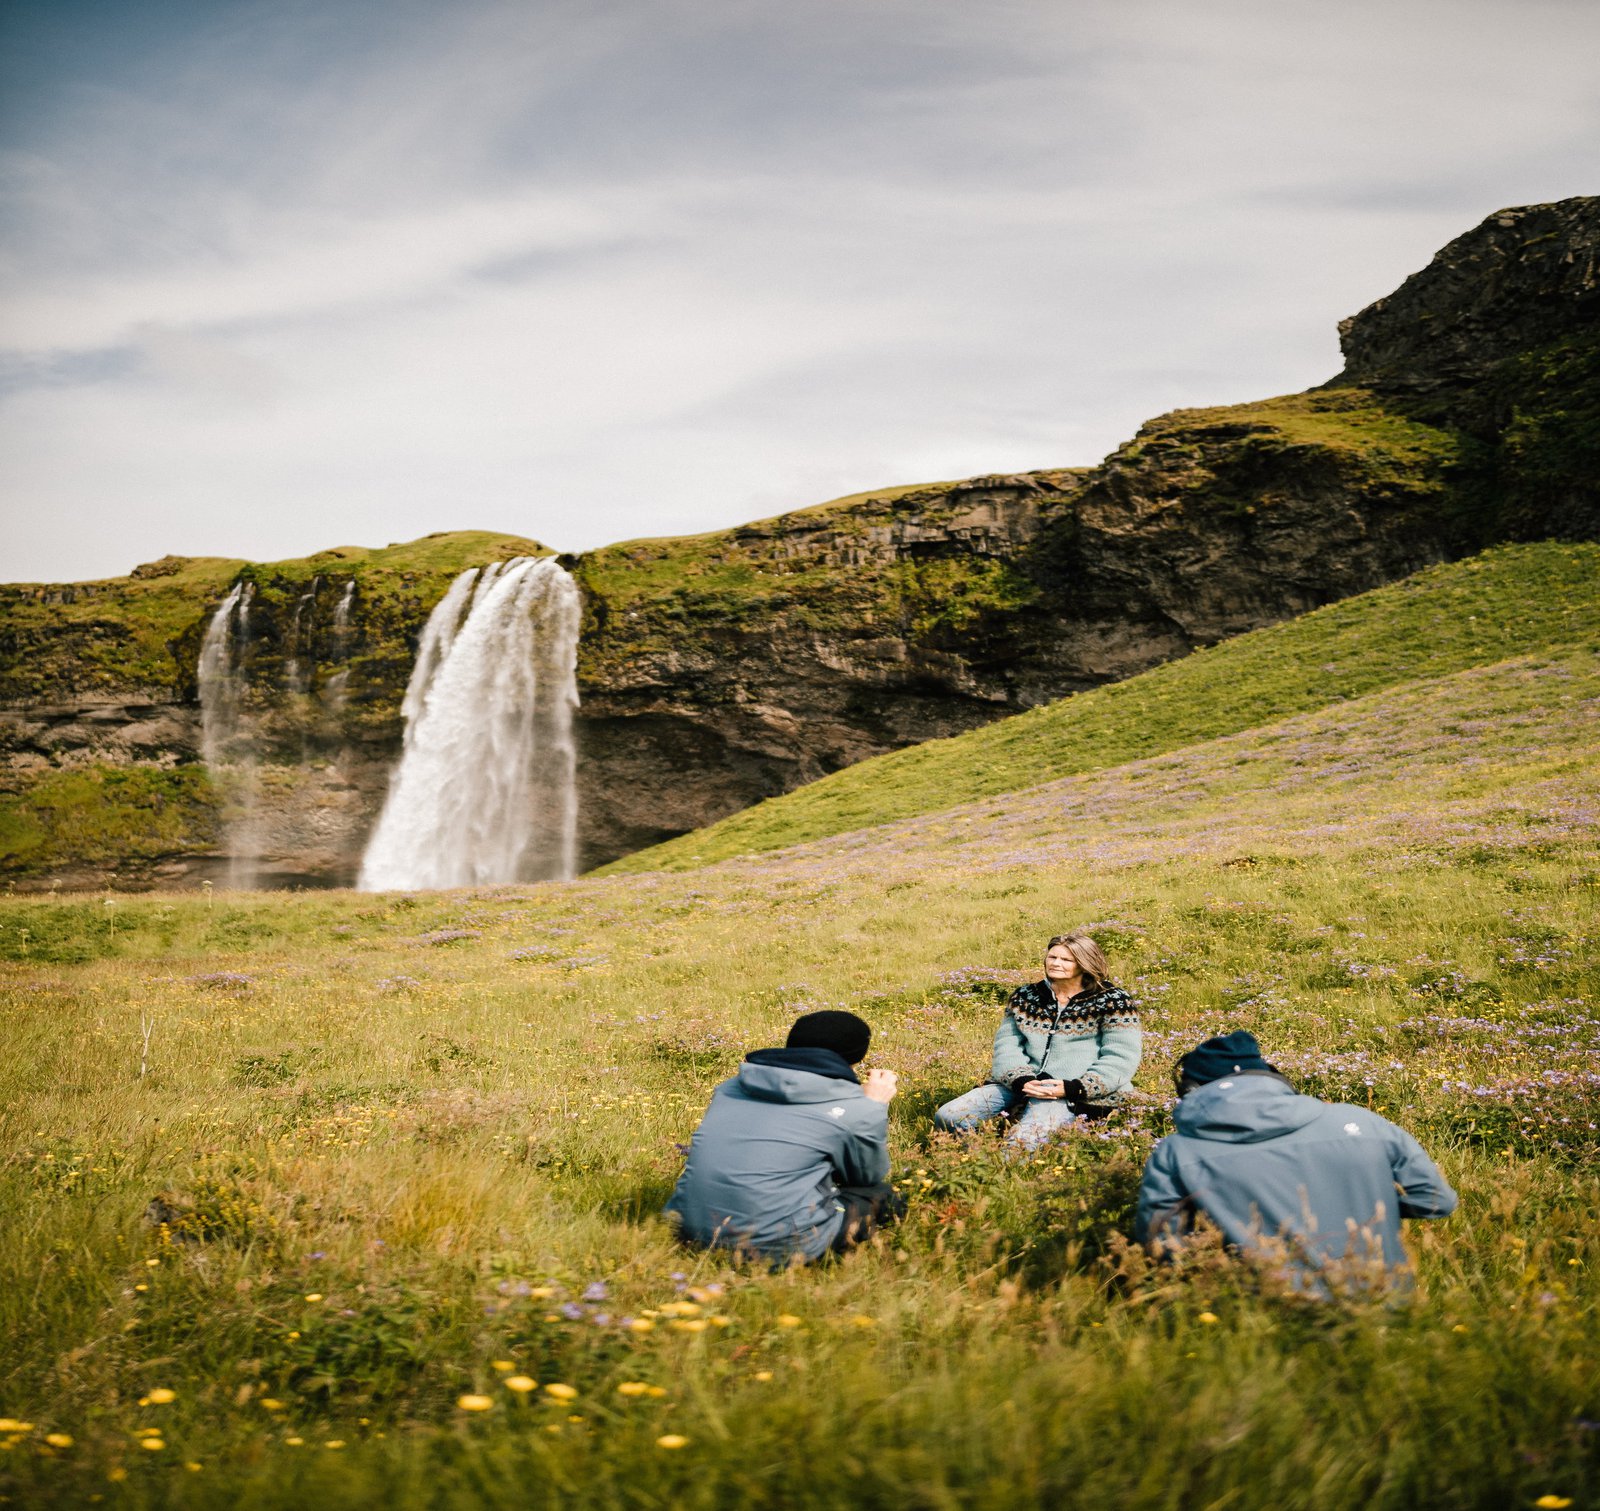 Was die Isländer*innen am Massentourismus in ihrem Land besorgt, dokumentieren Carlos und Tom in ihrem Kinofilm. (Foto: VierEcken)